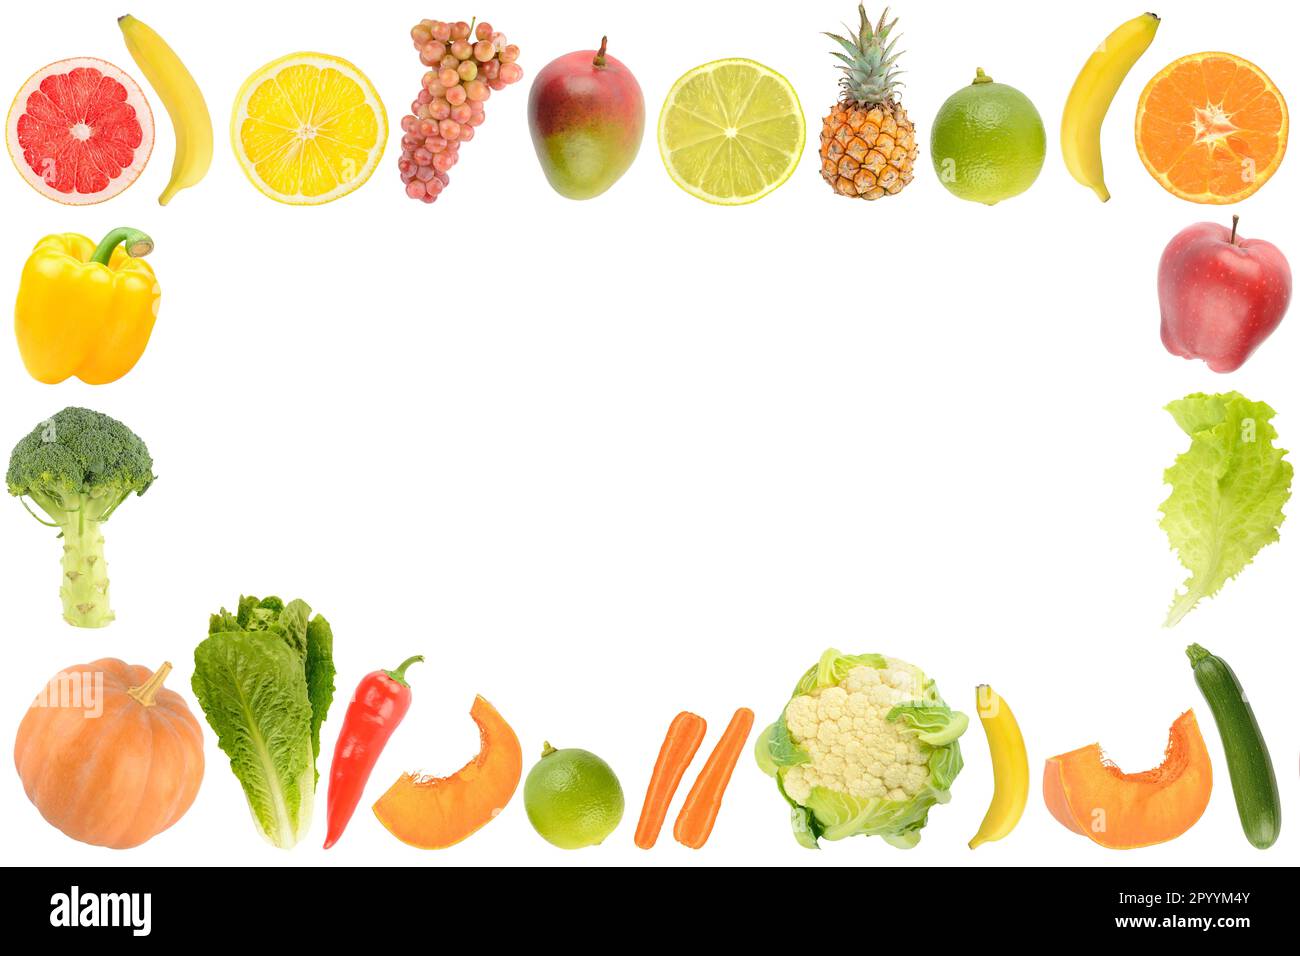 Cornice di verdure fresche e sane e frutta tagliata isolata su sfondo bianco. Foto Stock